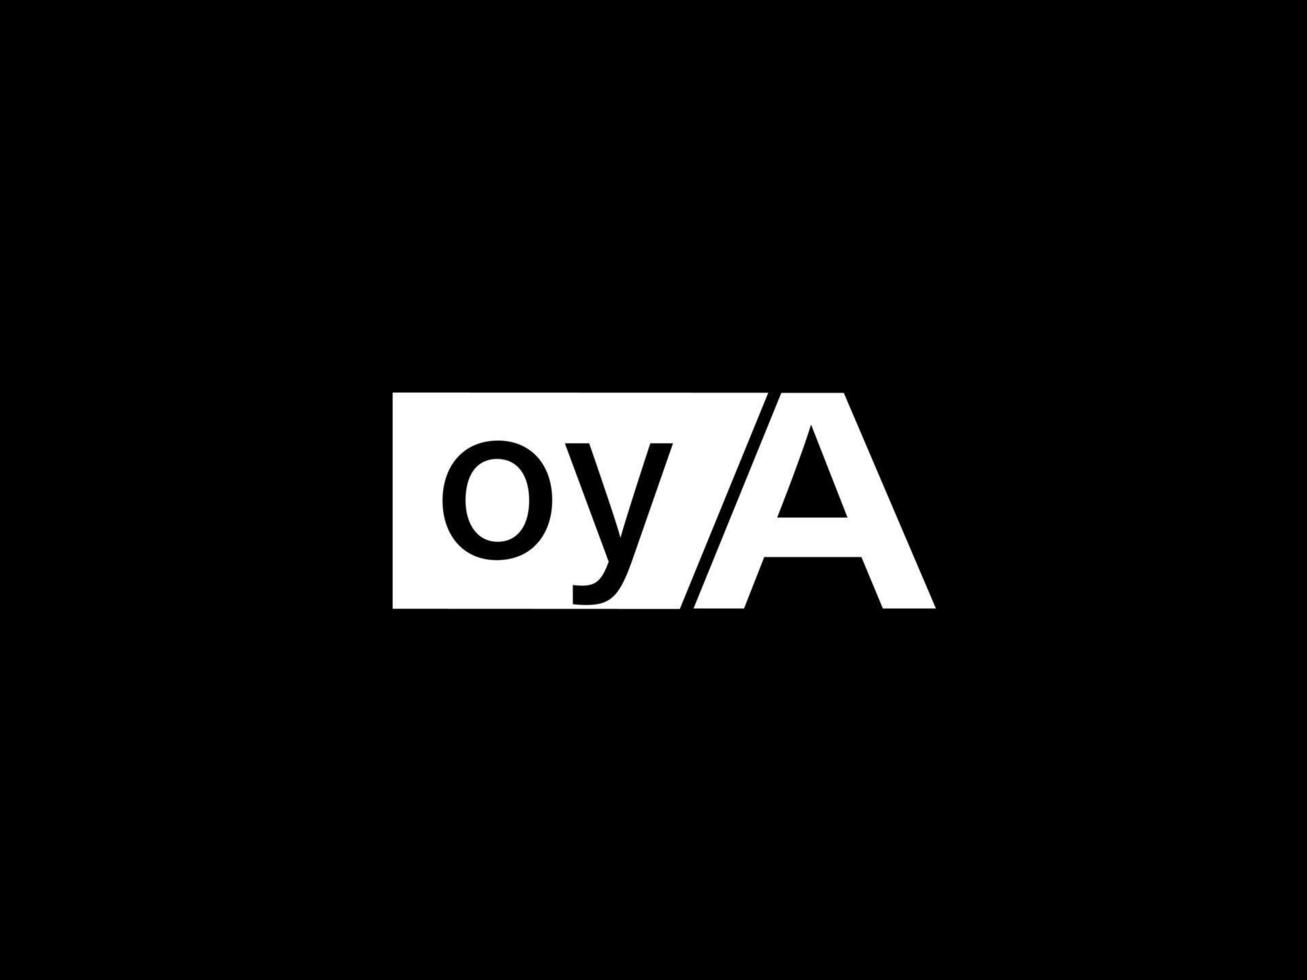 Oya-Logo und Grafikdesign Vektorgrafiken, Symbole isoliert auf schwarzem Hintergrund vektor